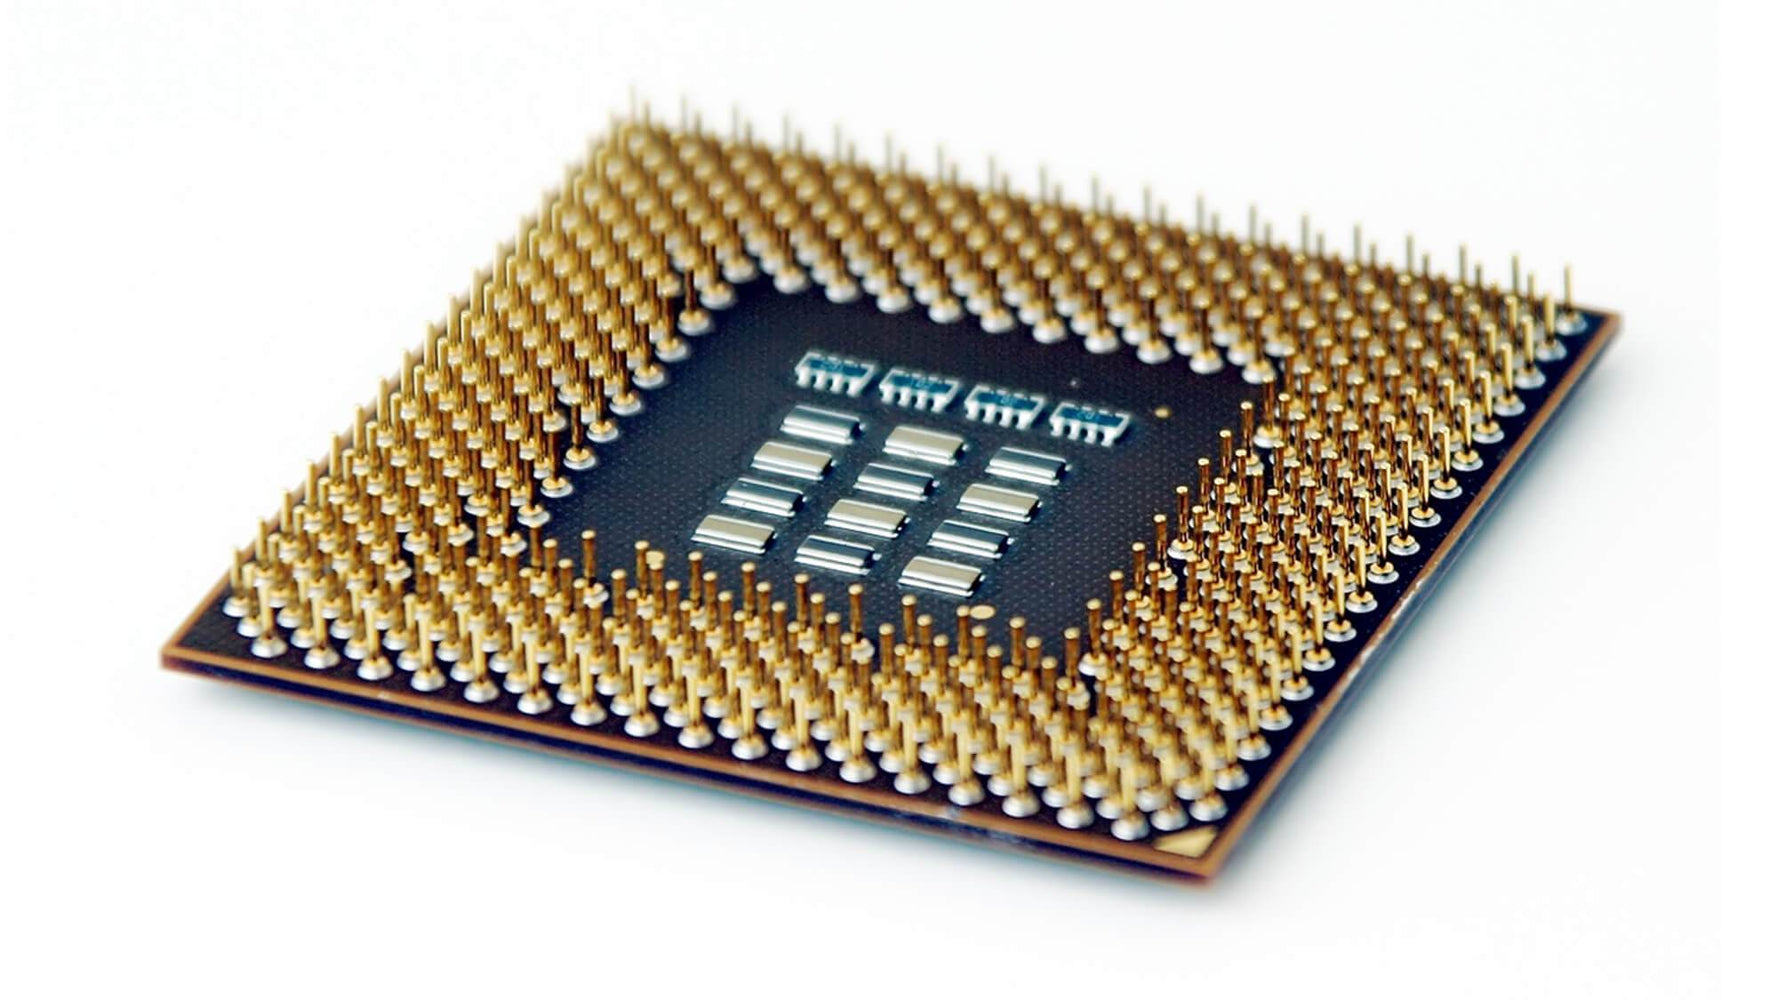 BX80621E52665 - Intel Xeon 8 Core E5-2665 2.4GHz 20MB L3 Cache 8GT/S QPI Socket FCLGA-2011 32NM 115W Processor